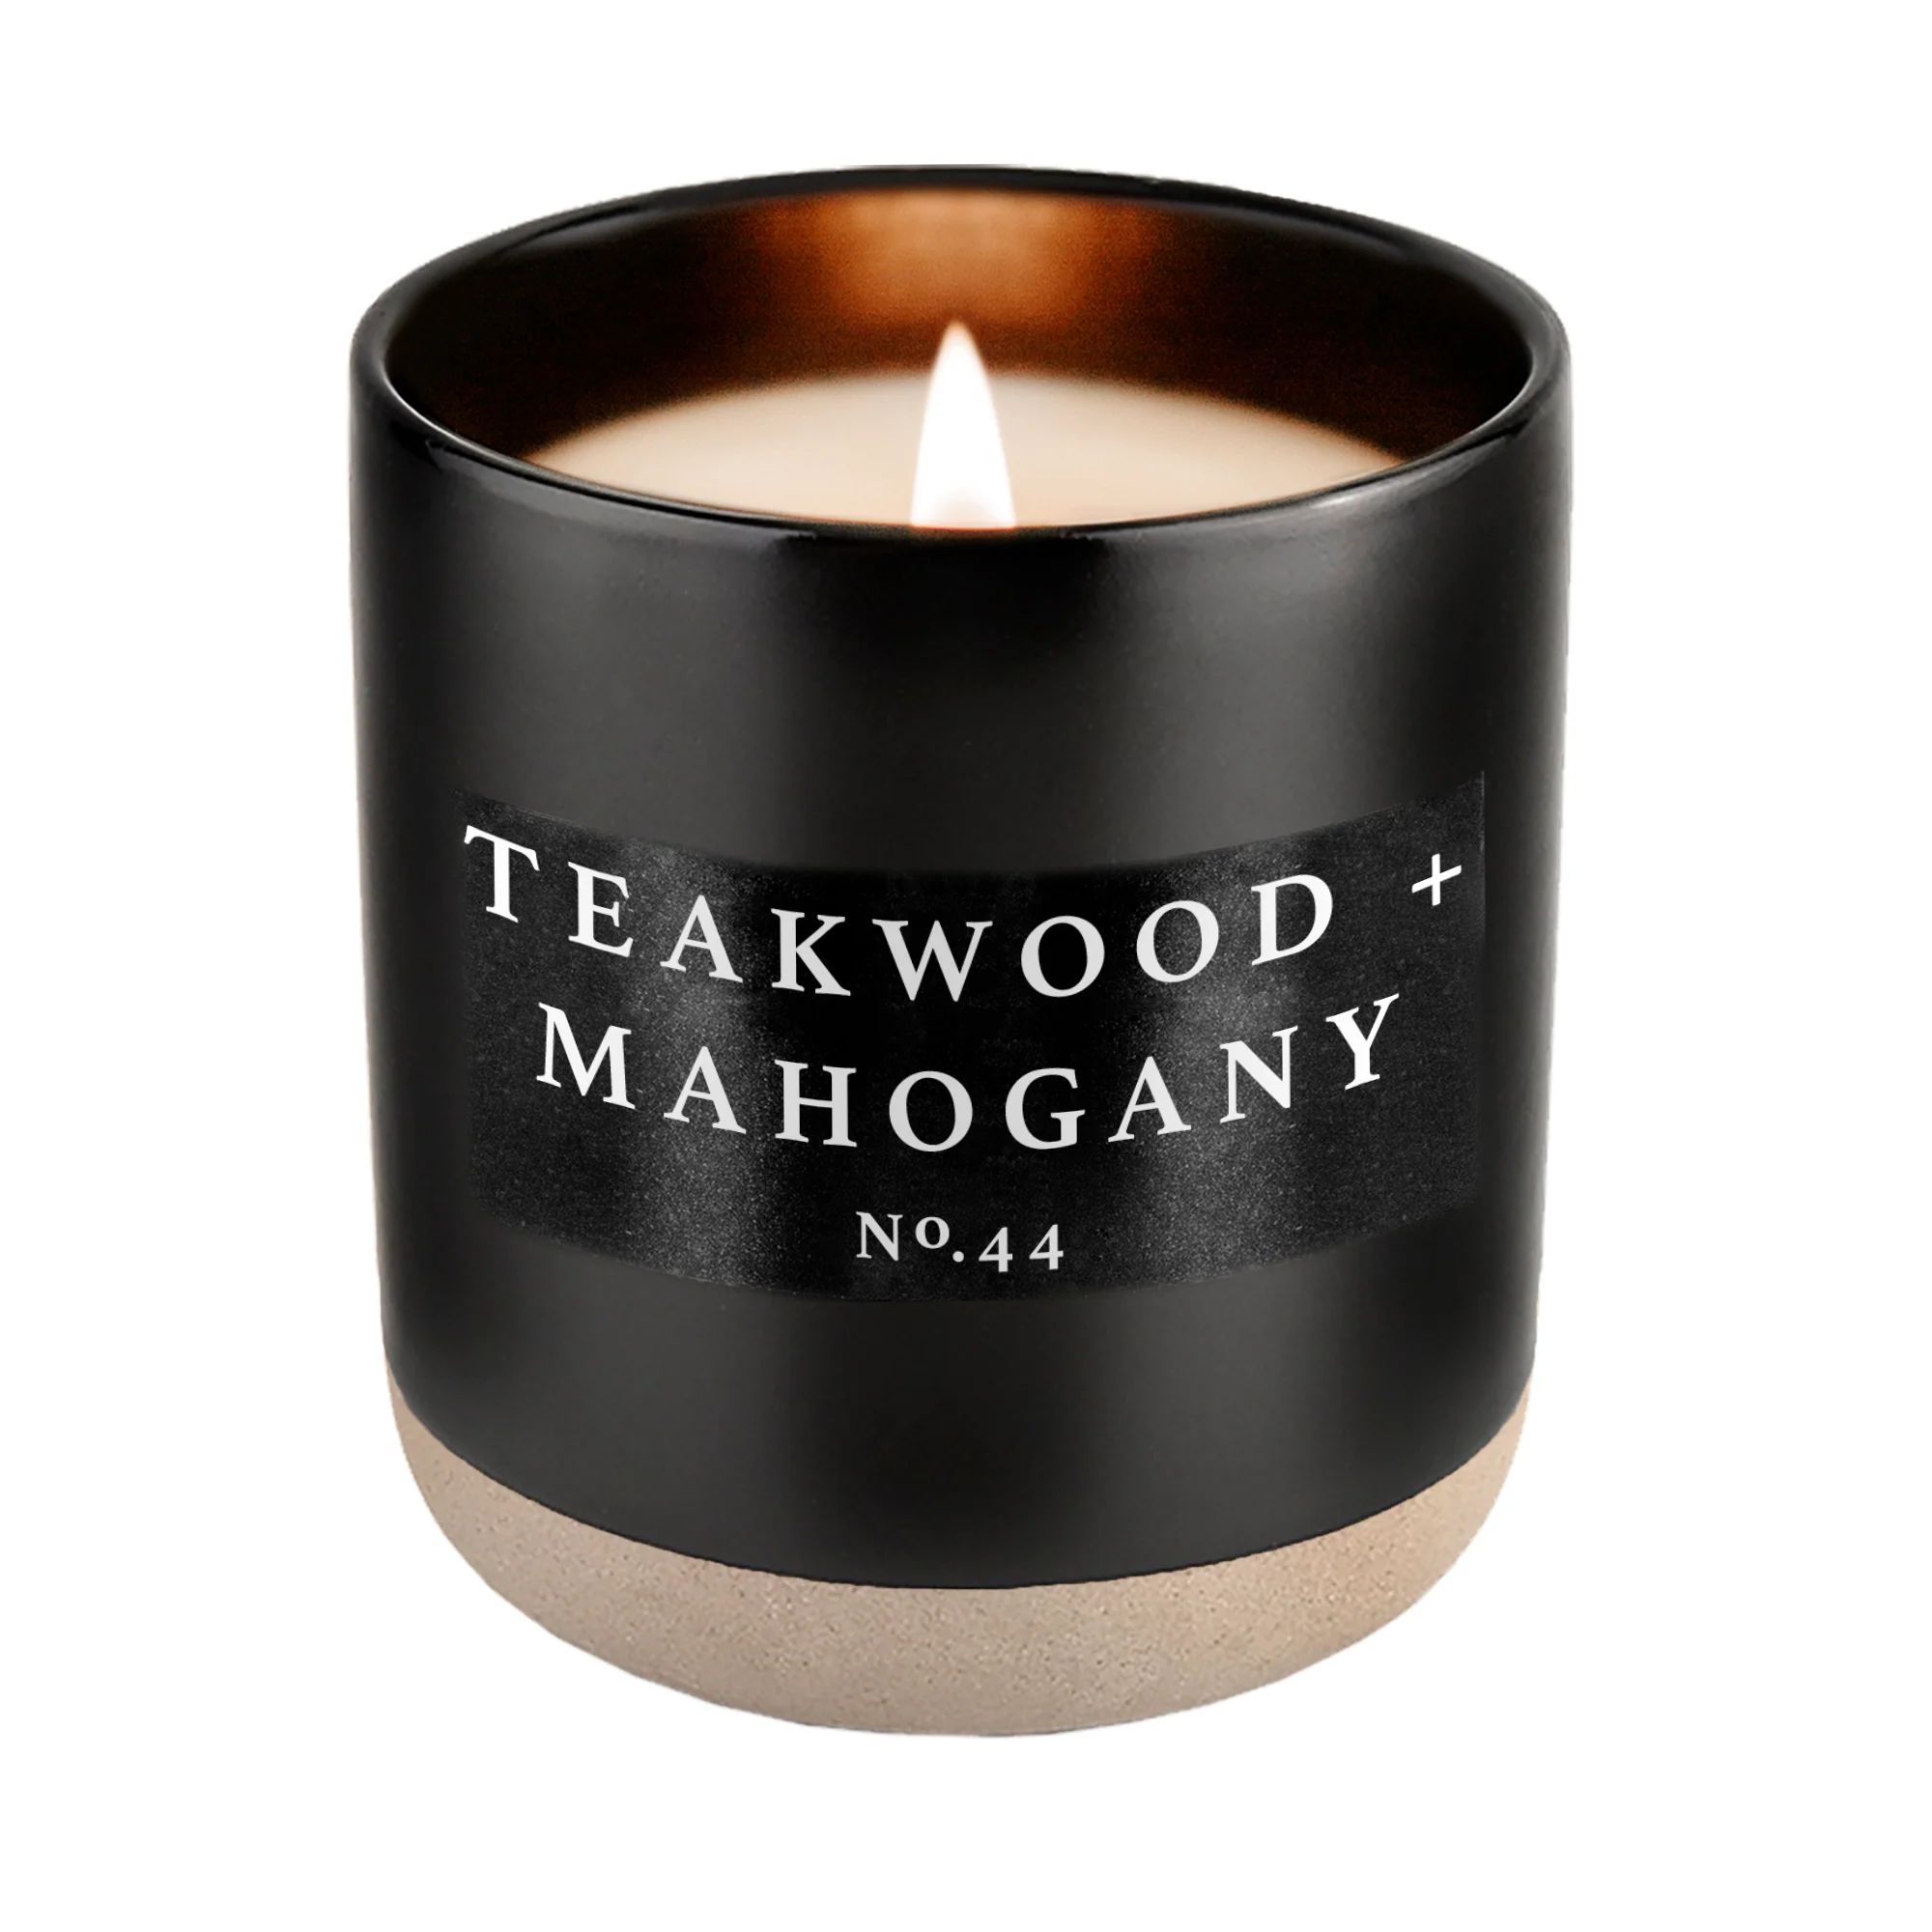 Teakwood and Mahogany Soy Candle - Black Stoneware Jar - 12 oz | Sweet Water Decor, LLC